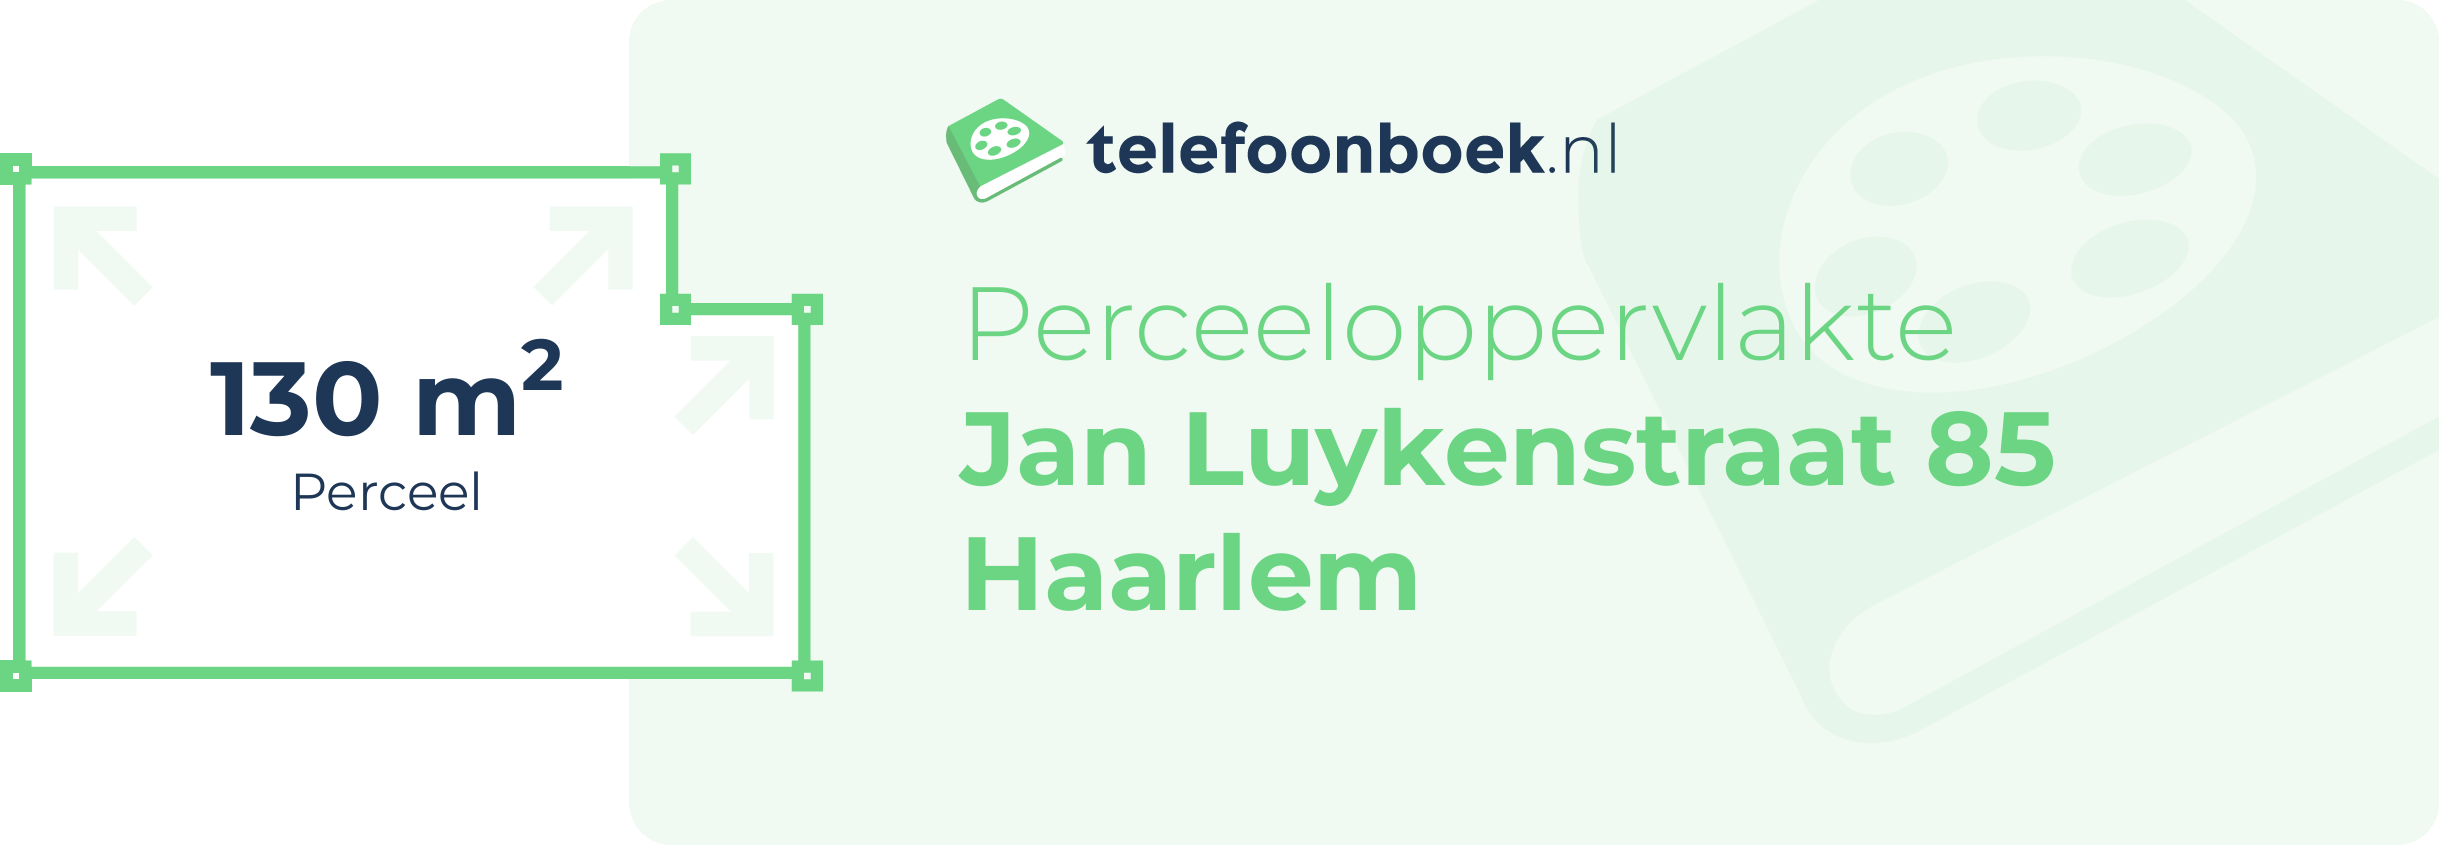 Perceeloppervlakte Jan Luykenstraat 85 Haarlem